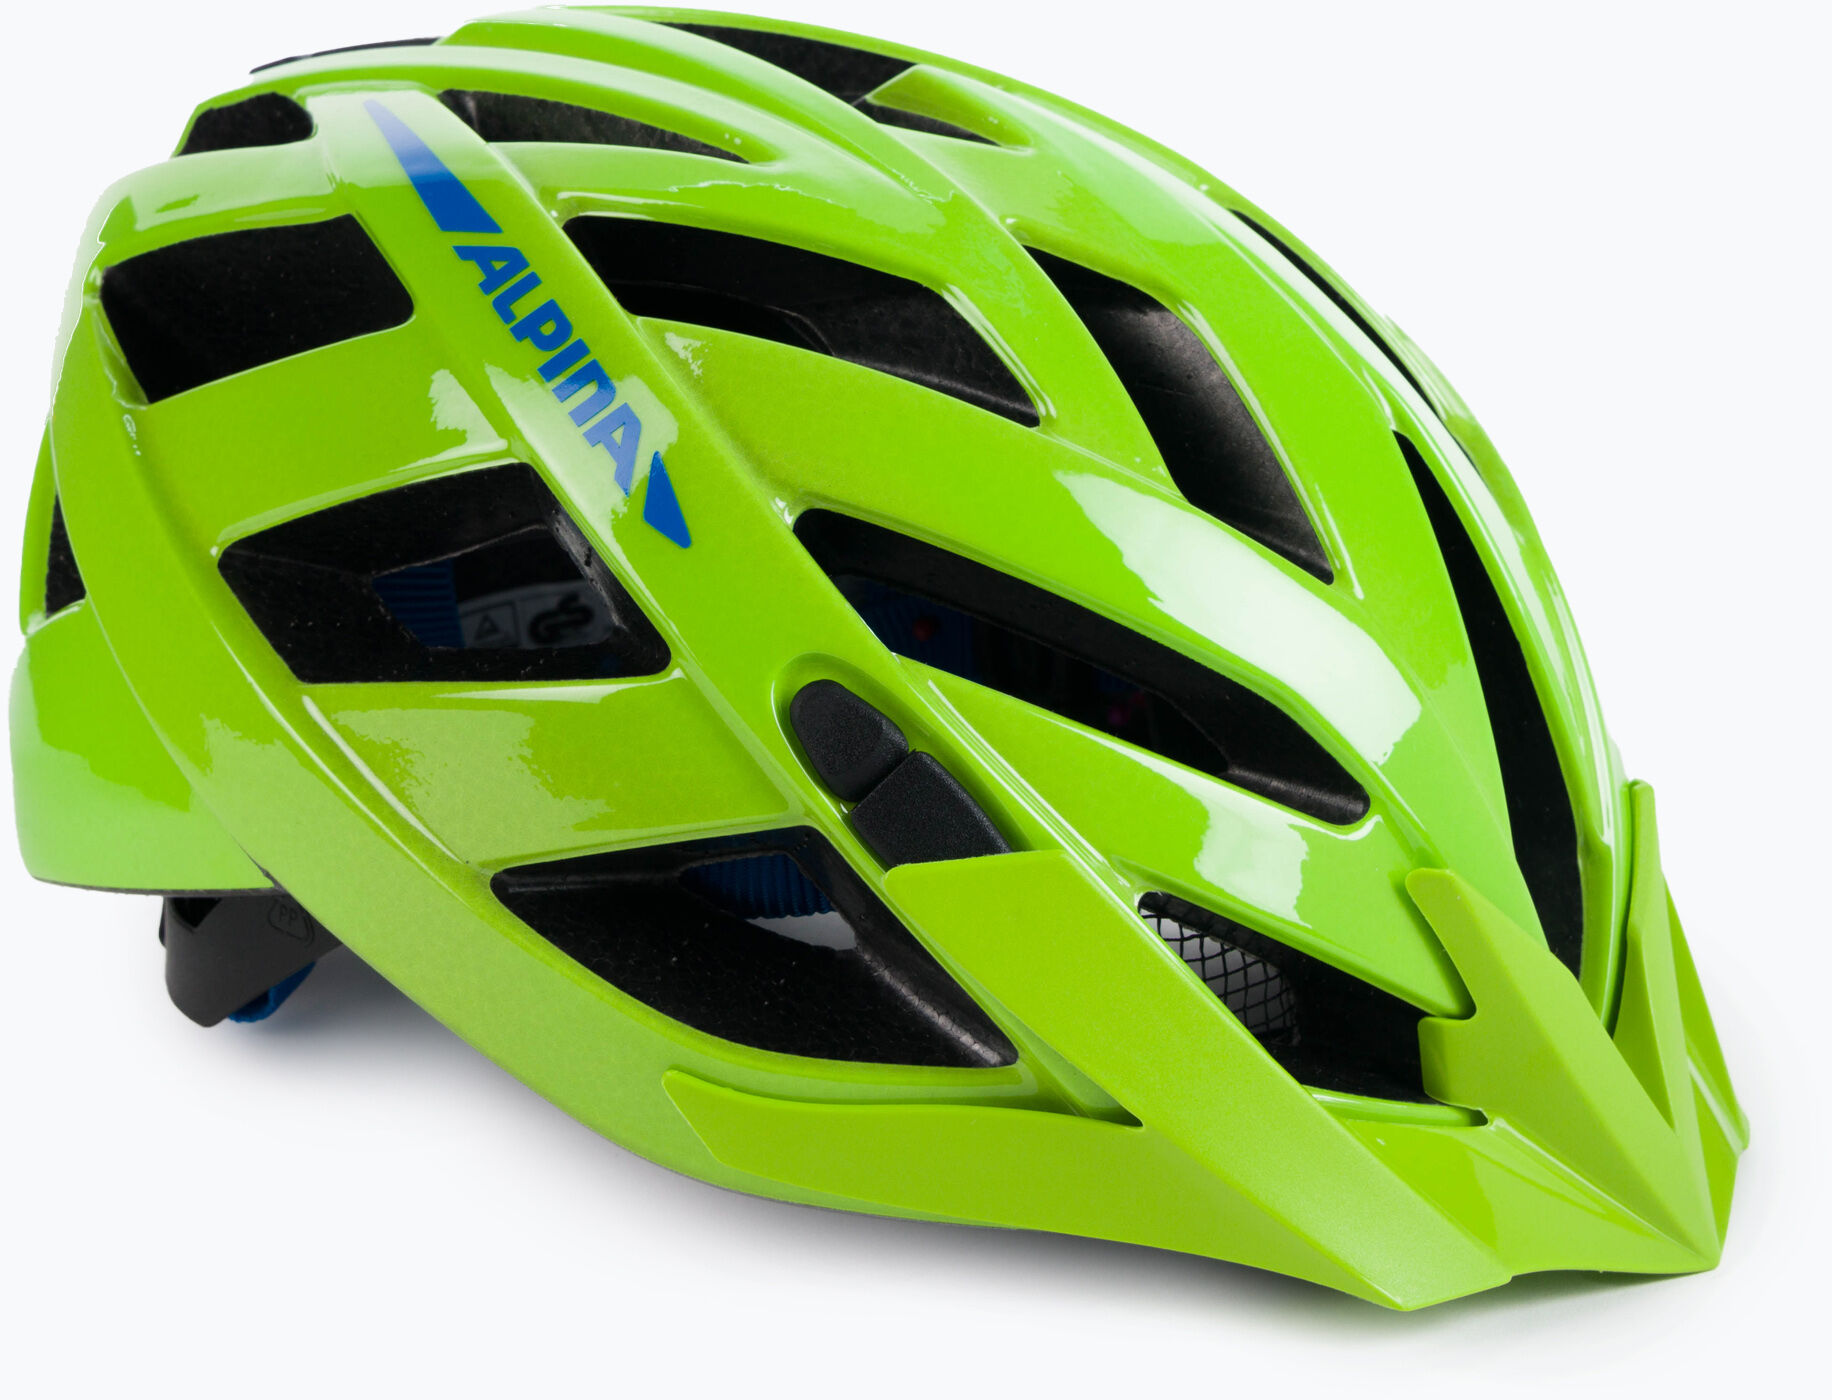 Kask rowerowy Alpina Panoma 2.0 green/blue gloss WYSYŁKA W 24H 30 DNI NA ZWROT